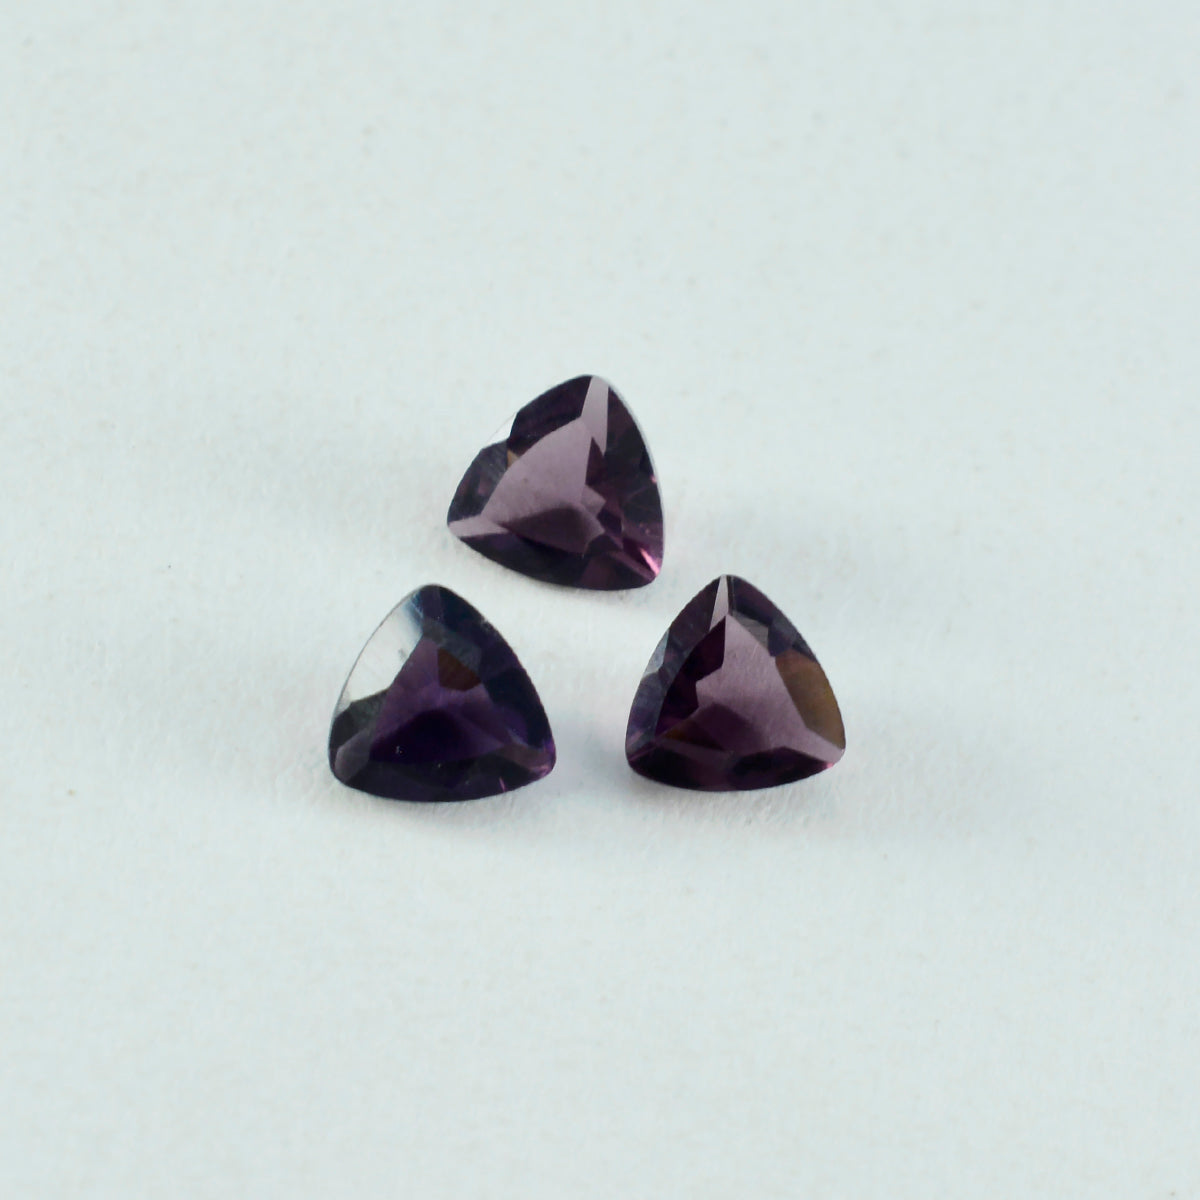 riyogems 1 шт. фиолетовый аметист cz ограненный 9x9 мм форма триллиона драгоценный камень привлекательного качества